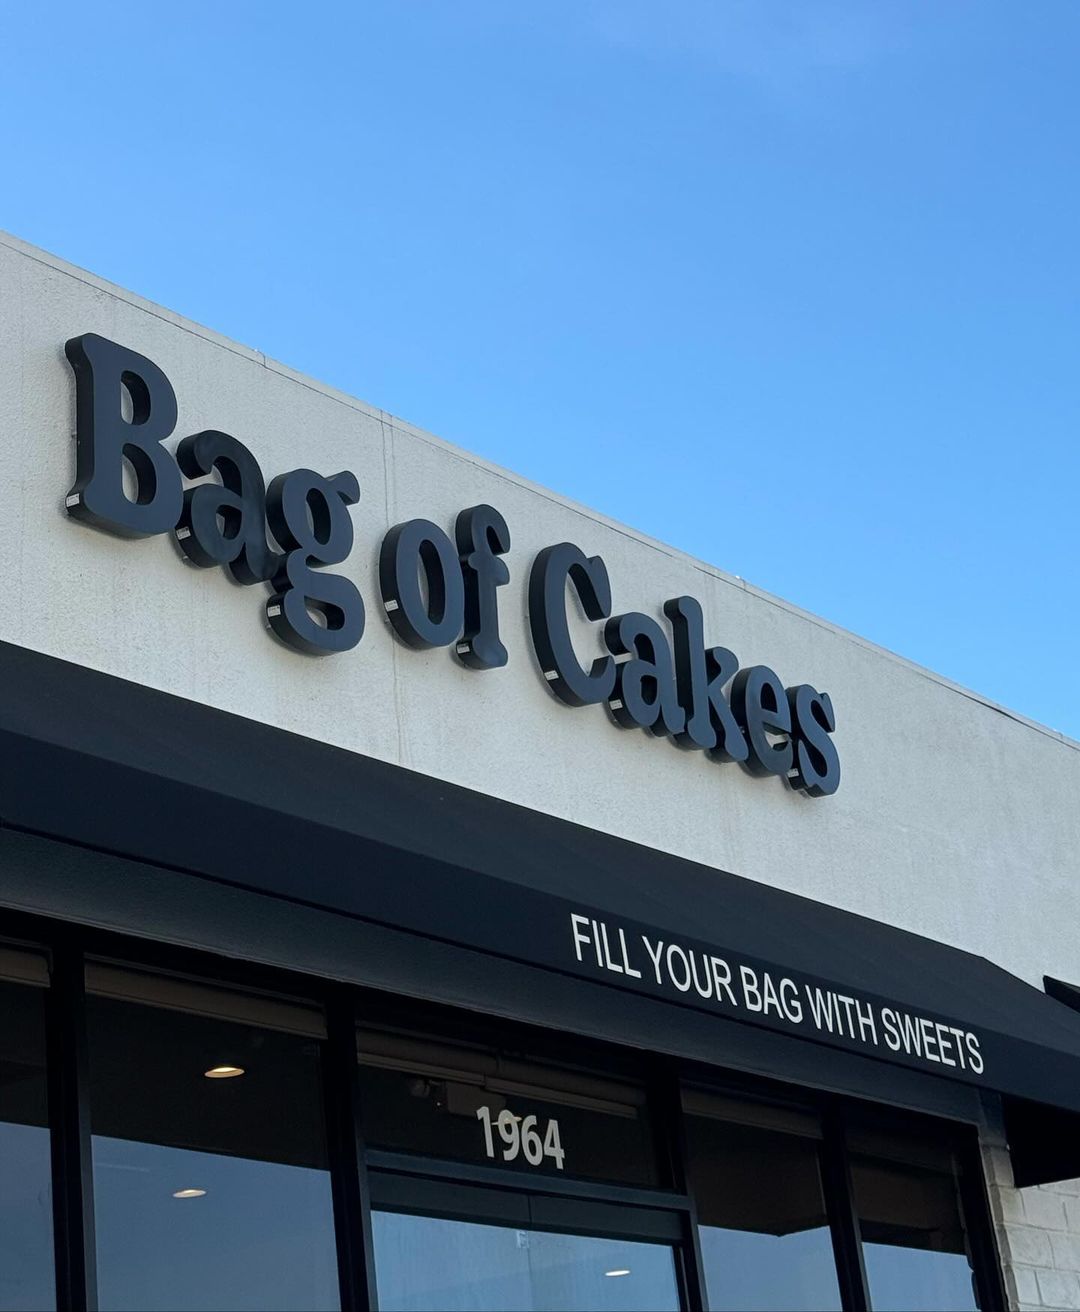 Pronašli smo pekaru u Kaliforniji čija peciva deluju kao da su delo AI